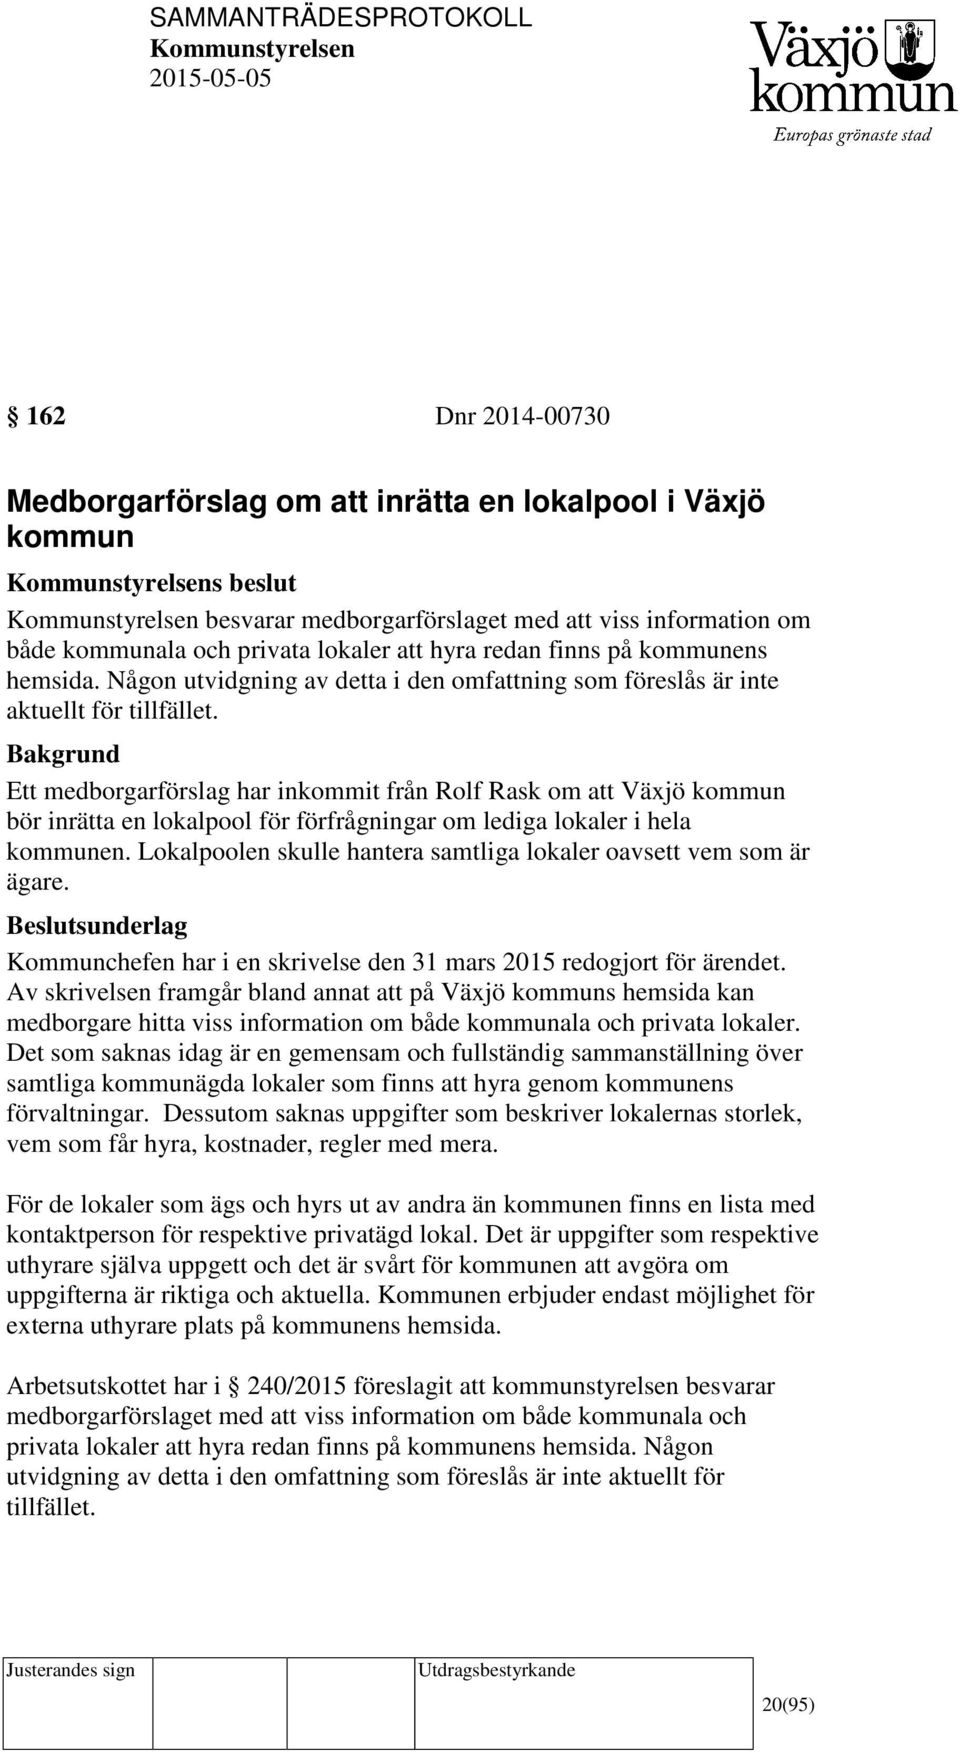 Ett medborgarförslag har inkommit från Rolf Rask om att Växjö kommun bör inrätta en lokalpool för förfrågningar om lediga lokaler i hela kommunen.